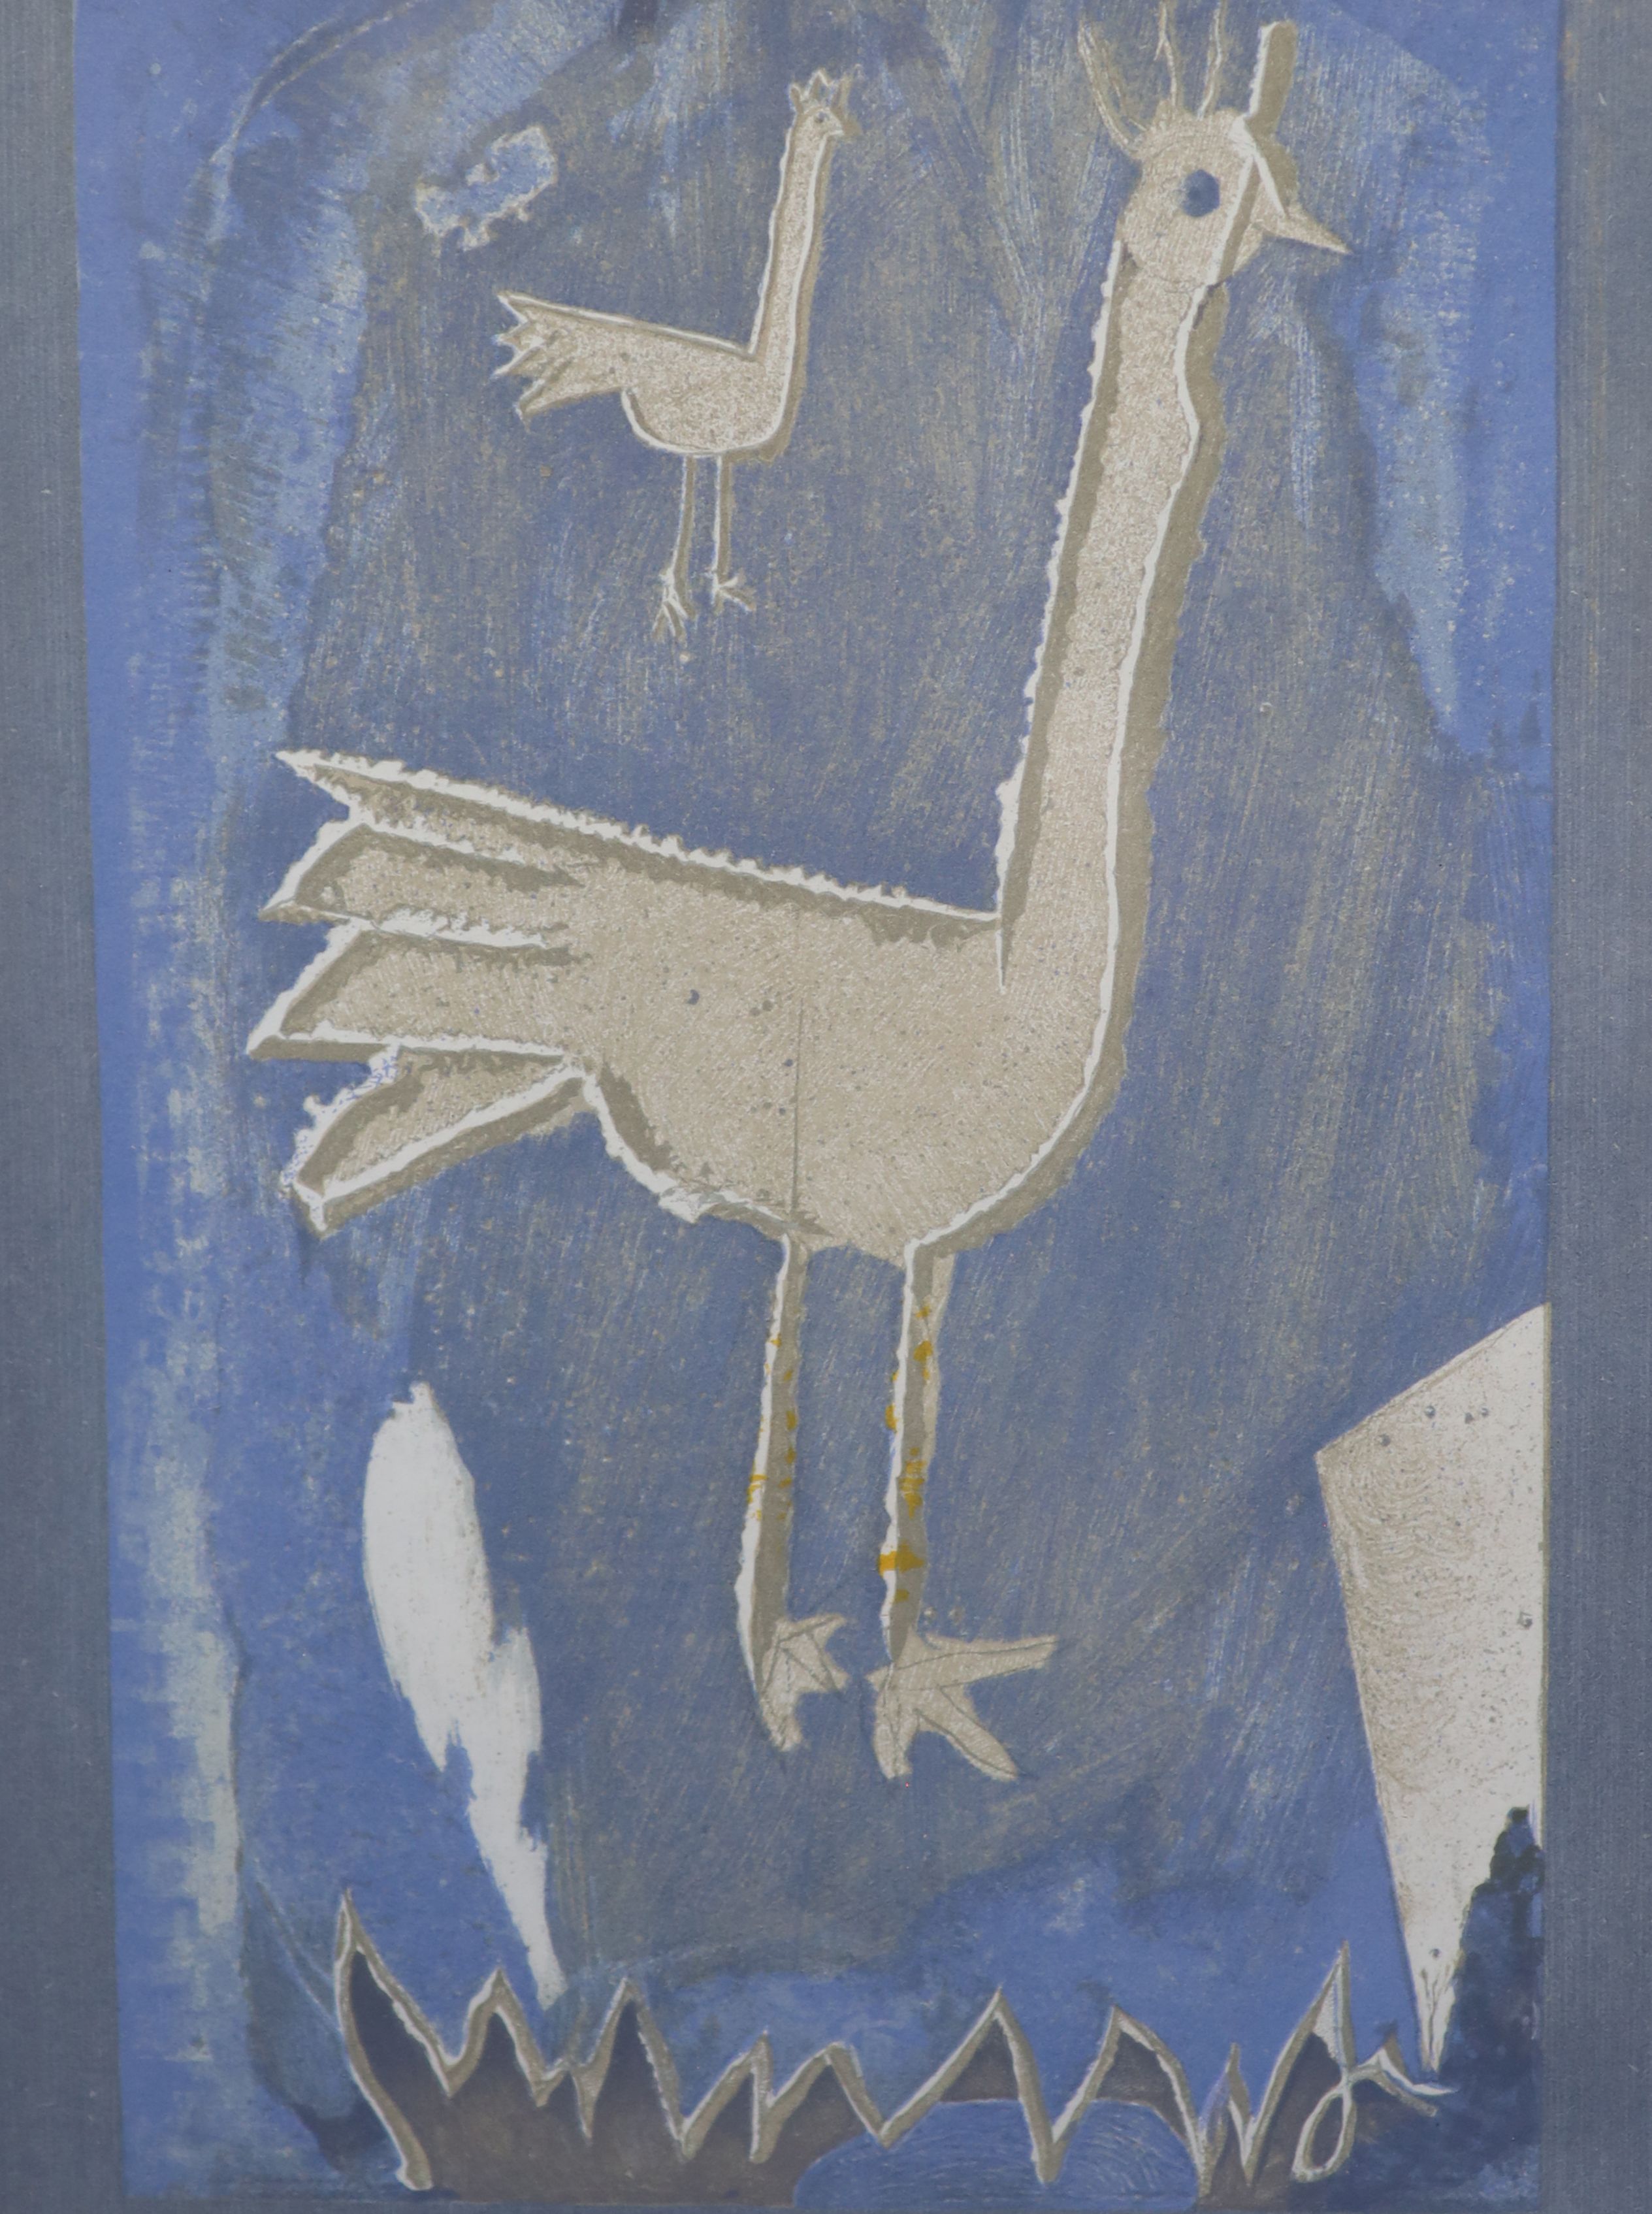 Georges Braque (French, 1882-1963), Blue Bird (Le Coq), 1952, Colour lithograph, 31 x 24cm.